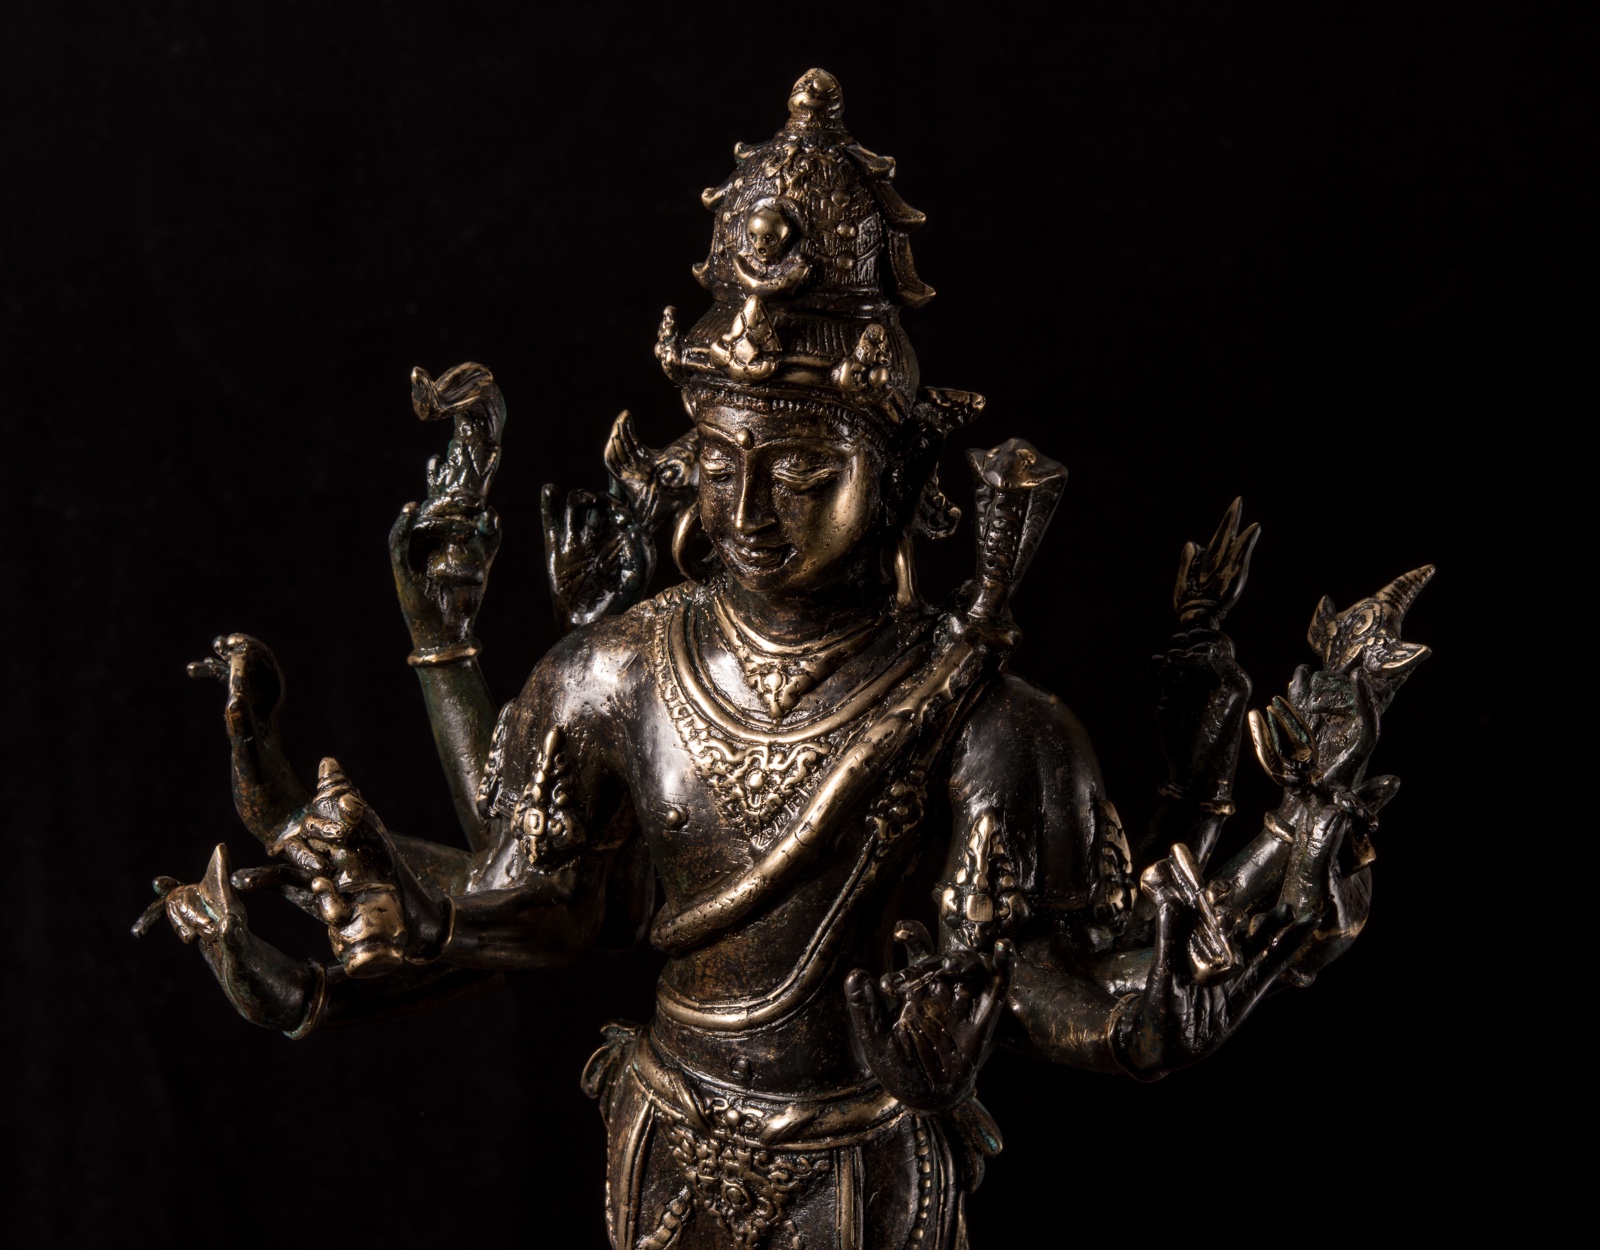 Бронзовая статуя Шива в медитации, 37см. фото VipKeris